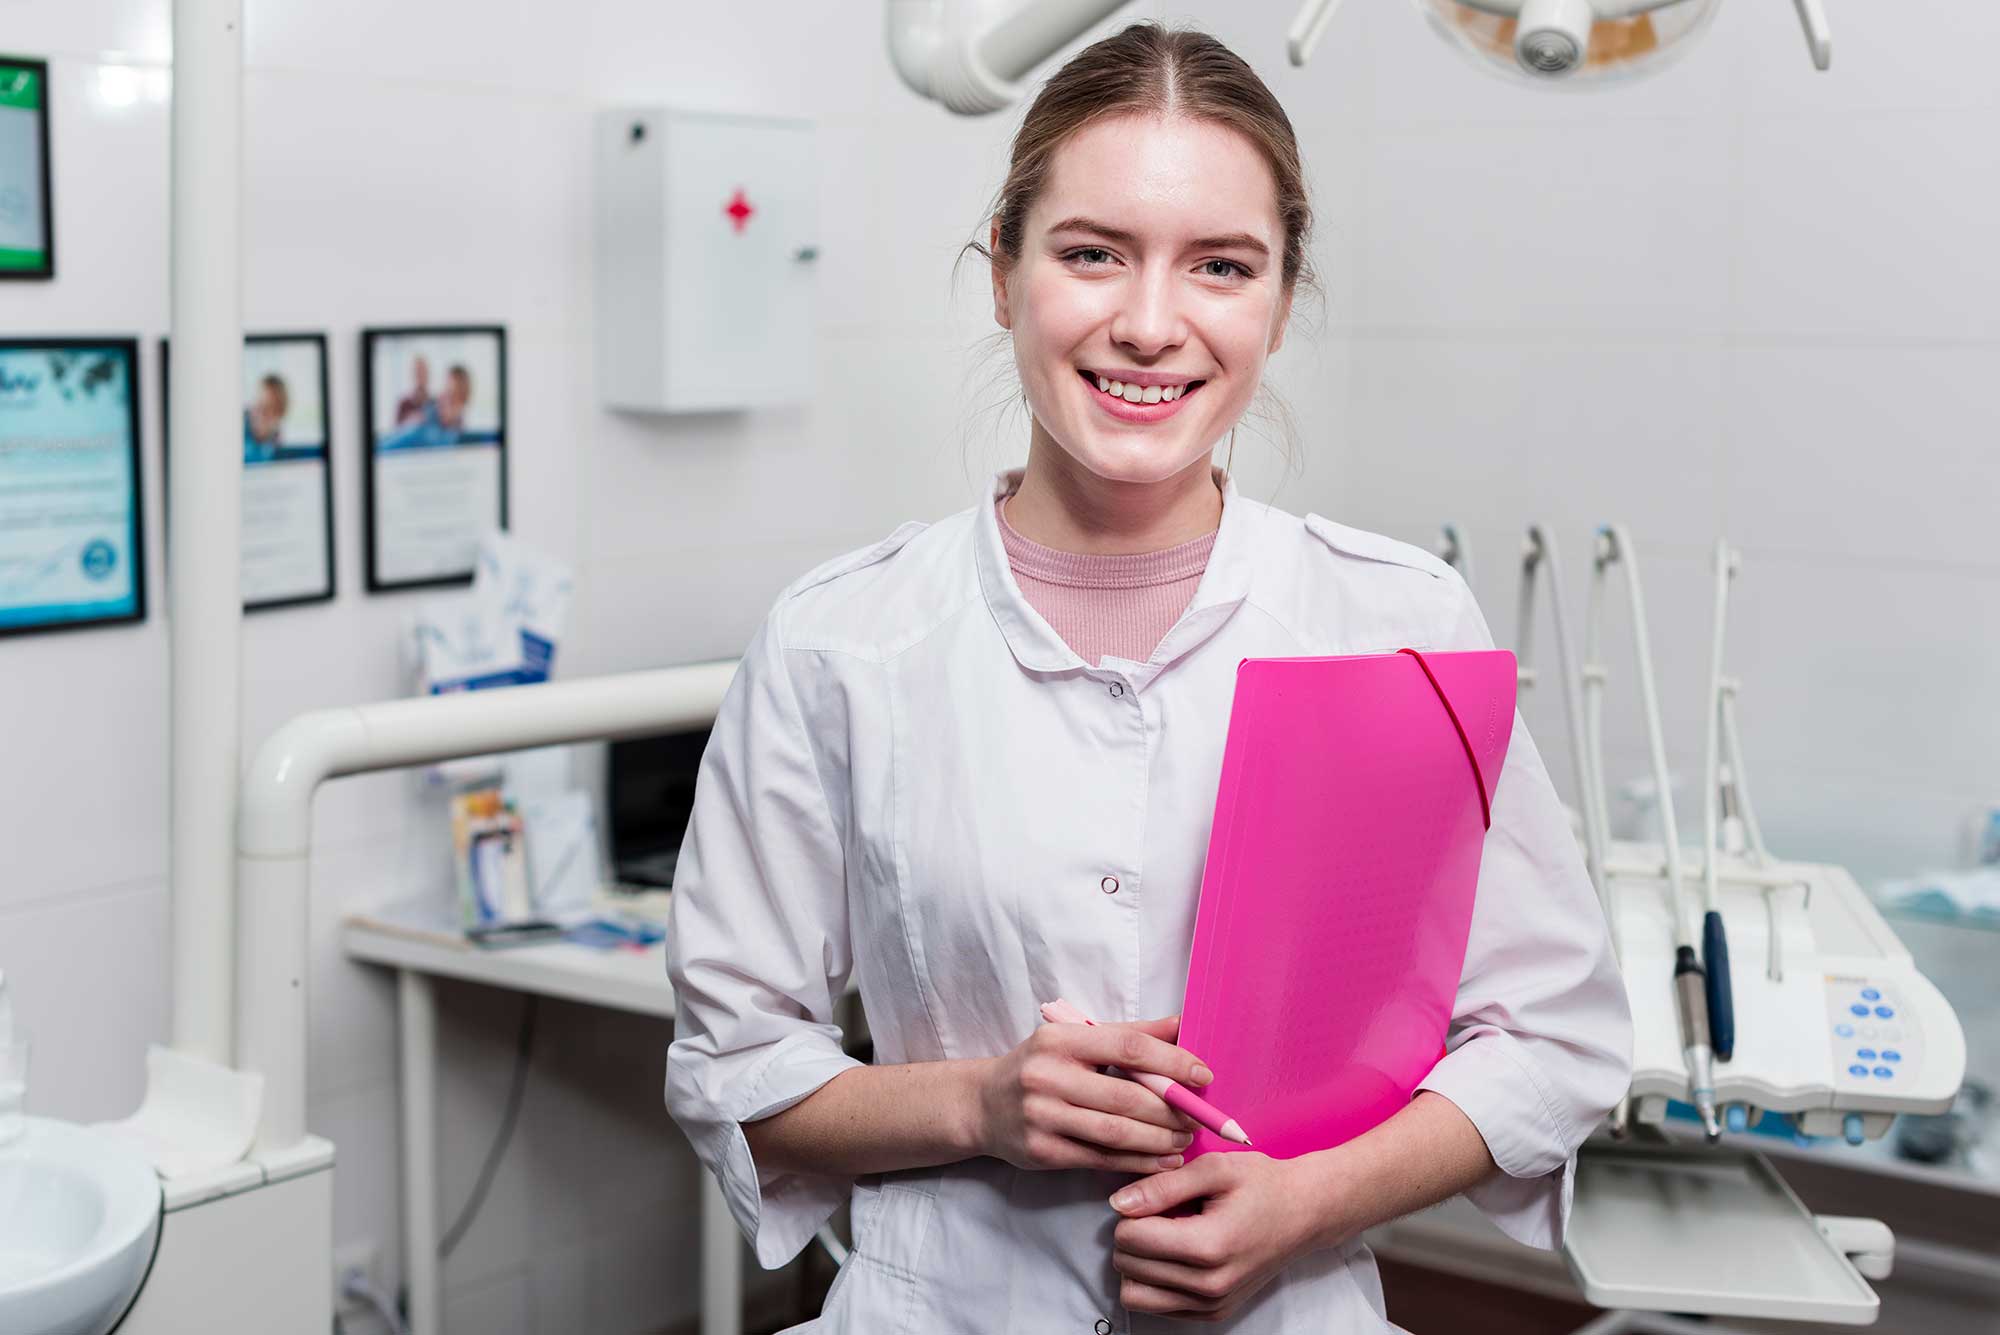 female dentistry student